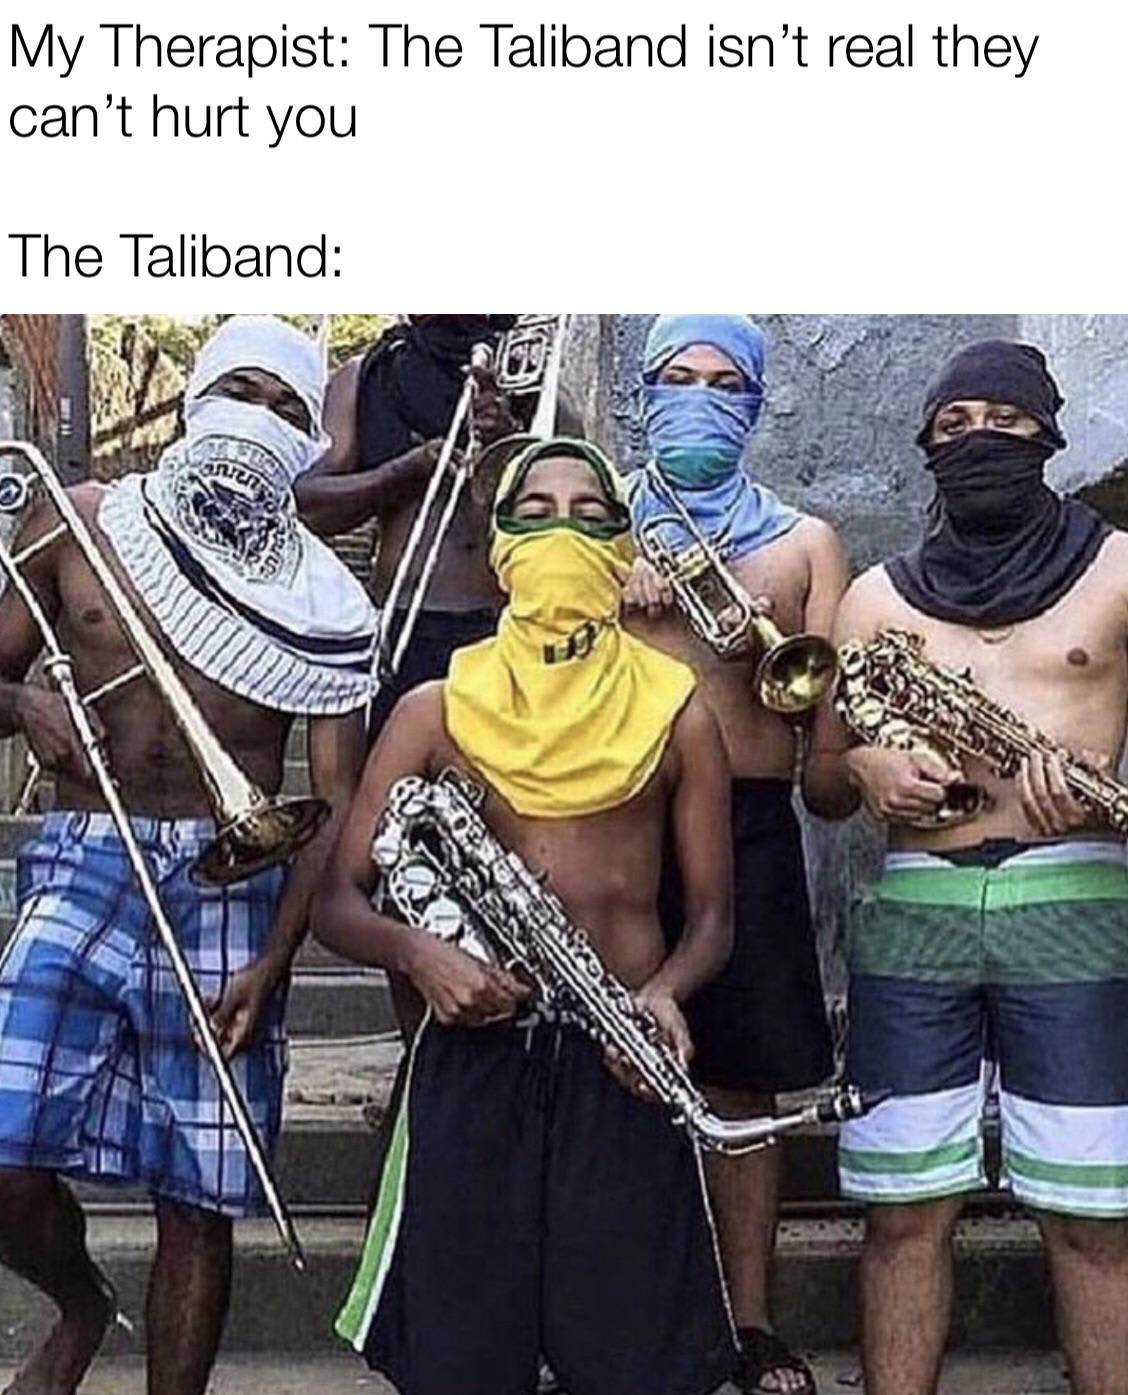 the taliband XDDD